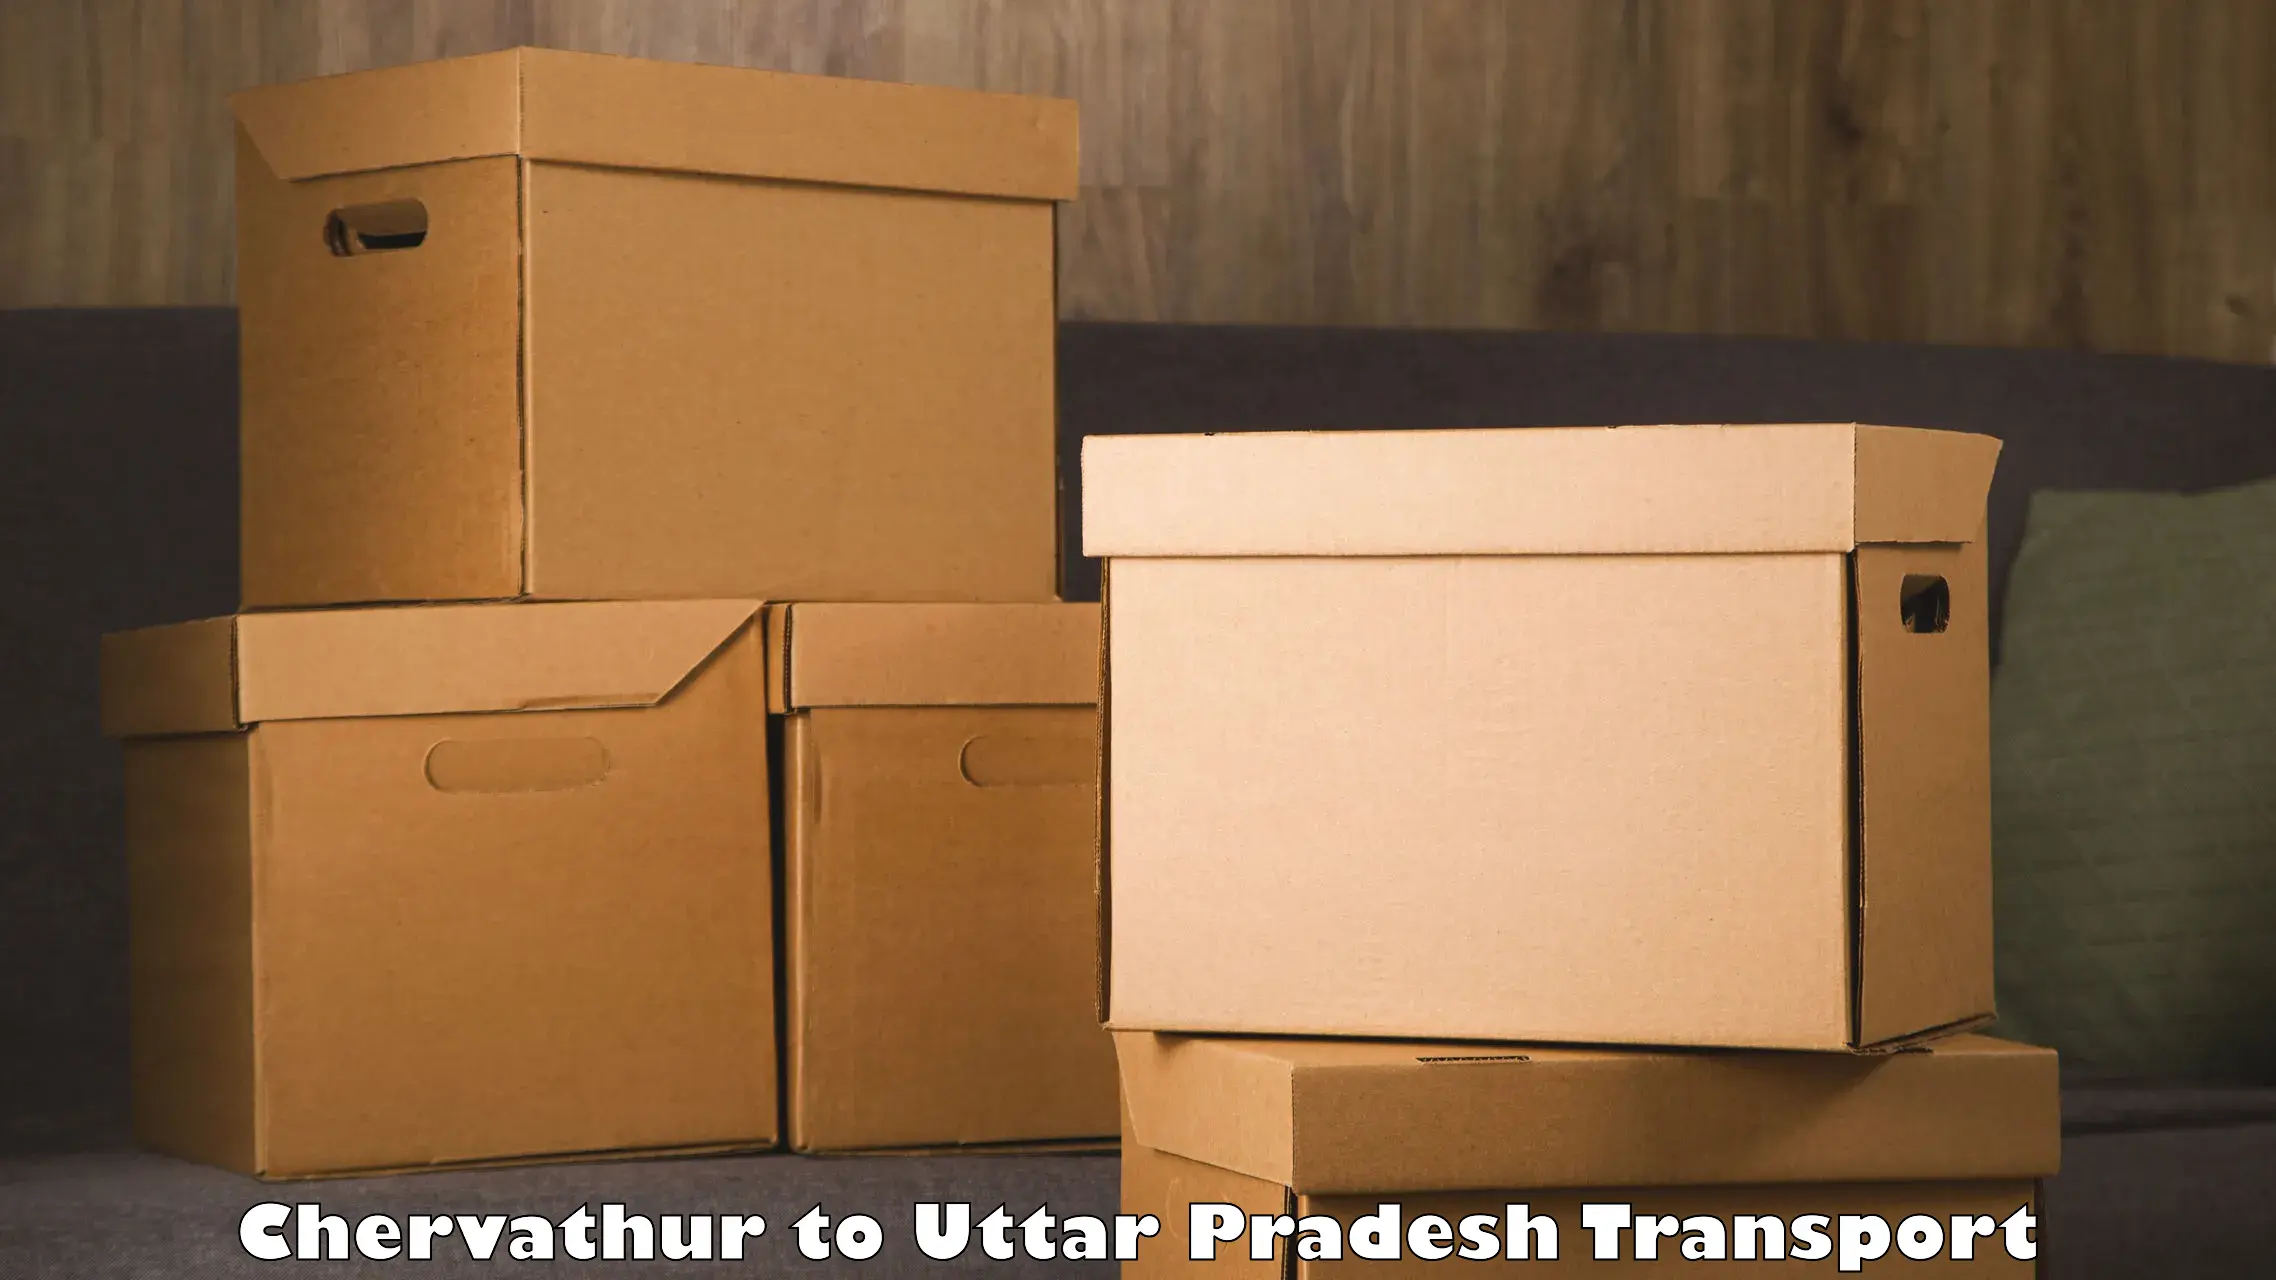 Transport in sharing Chervathur to Uttar Pradesh